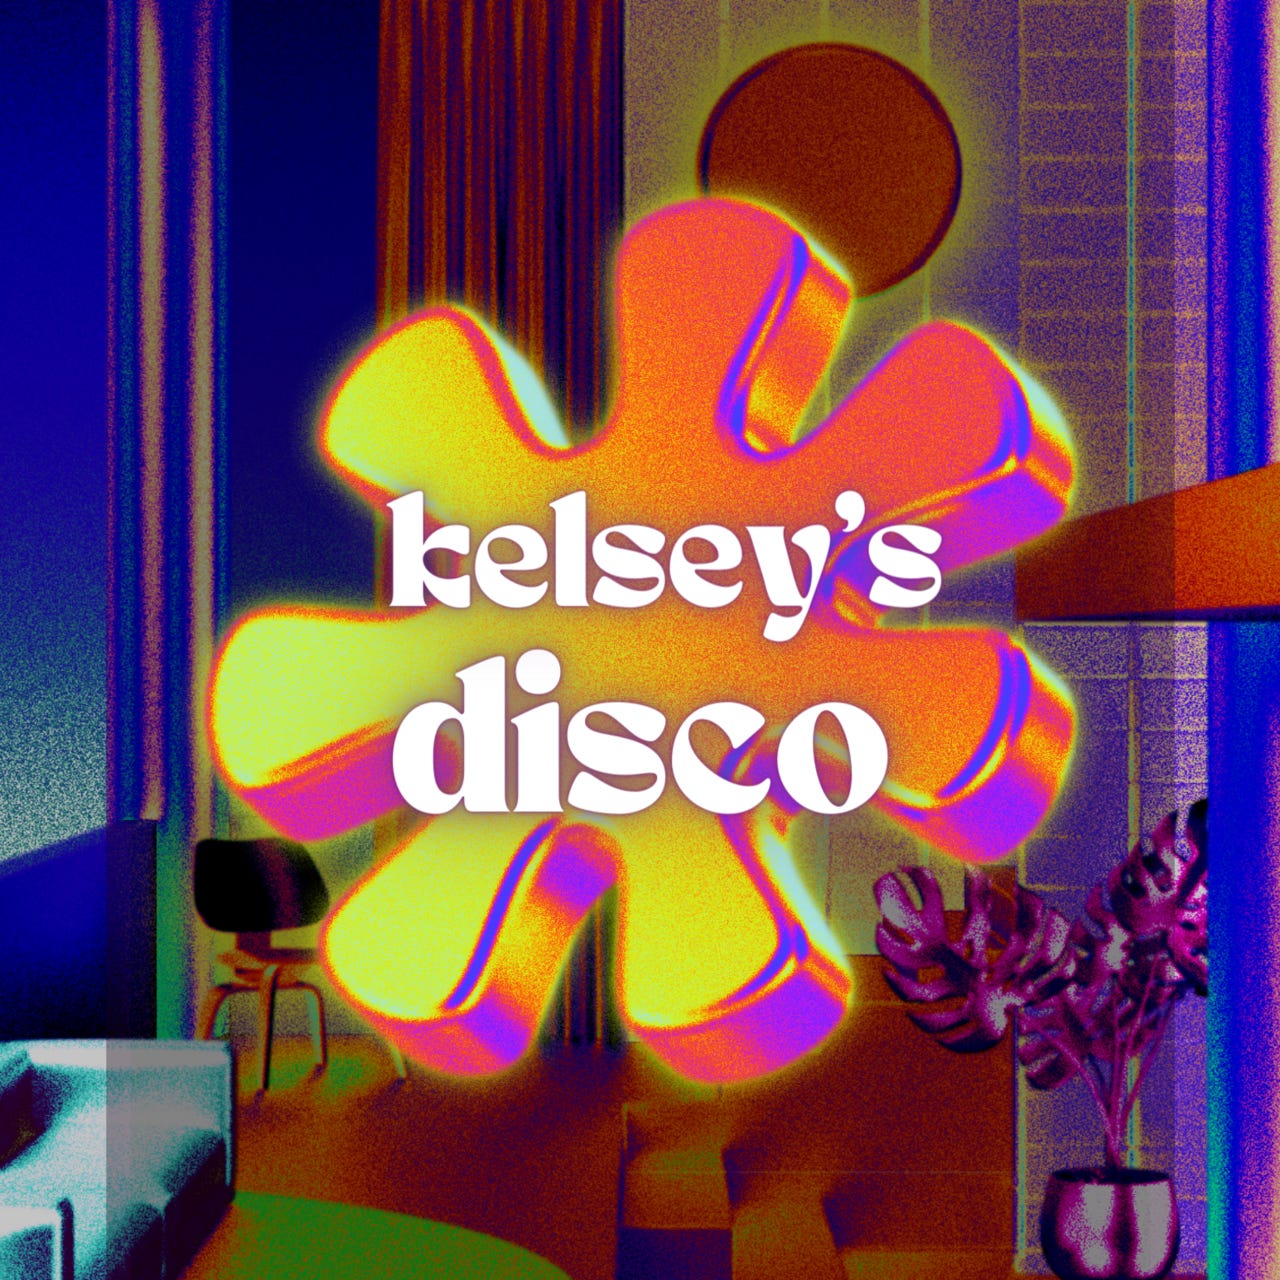 Artwork for kelsey's disco